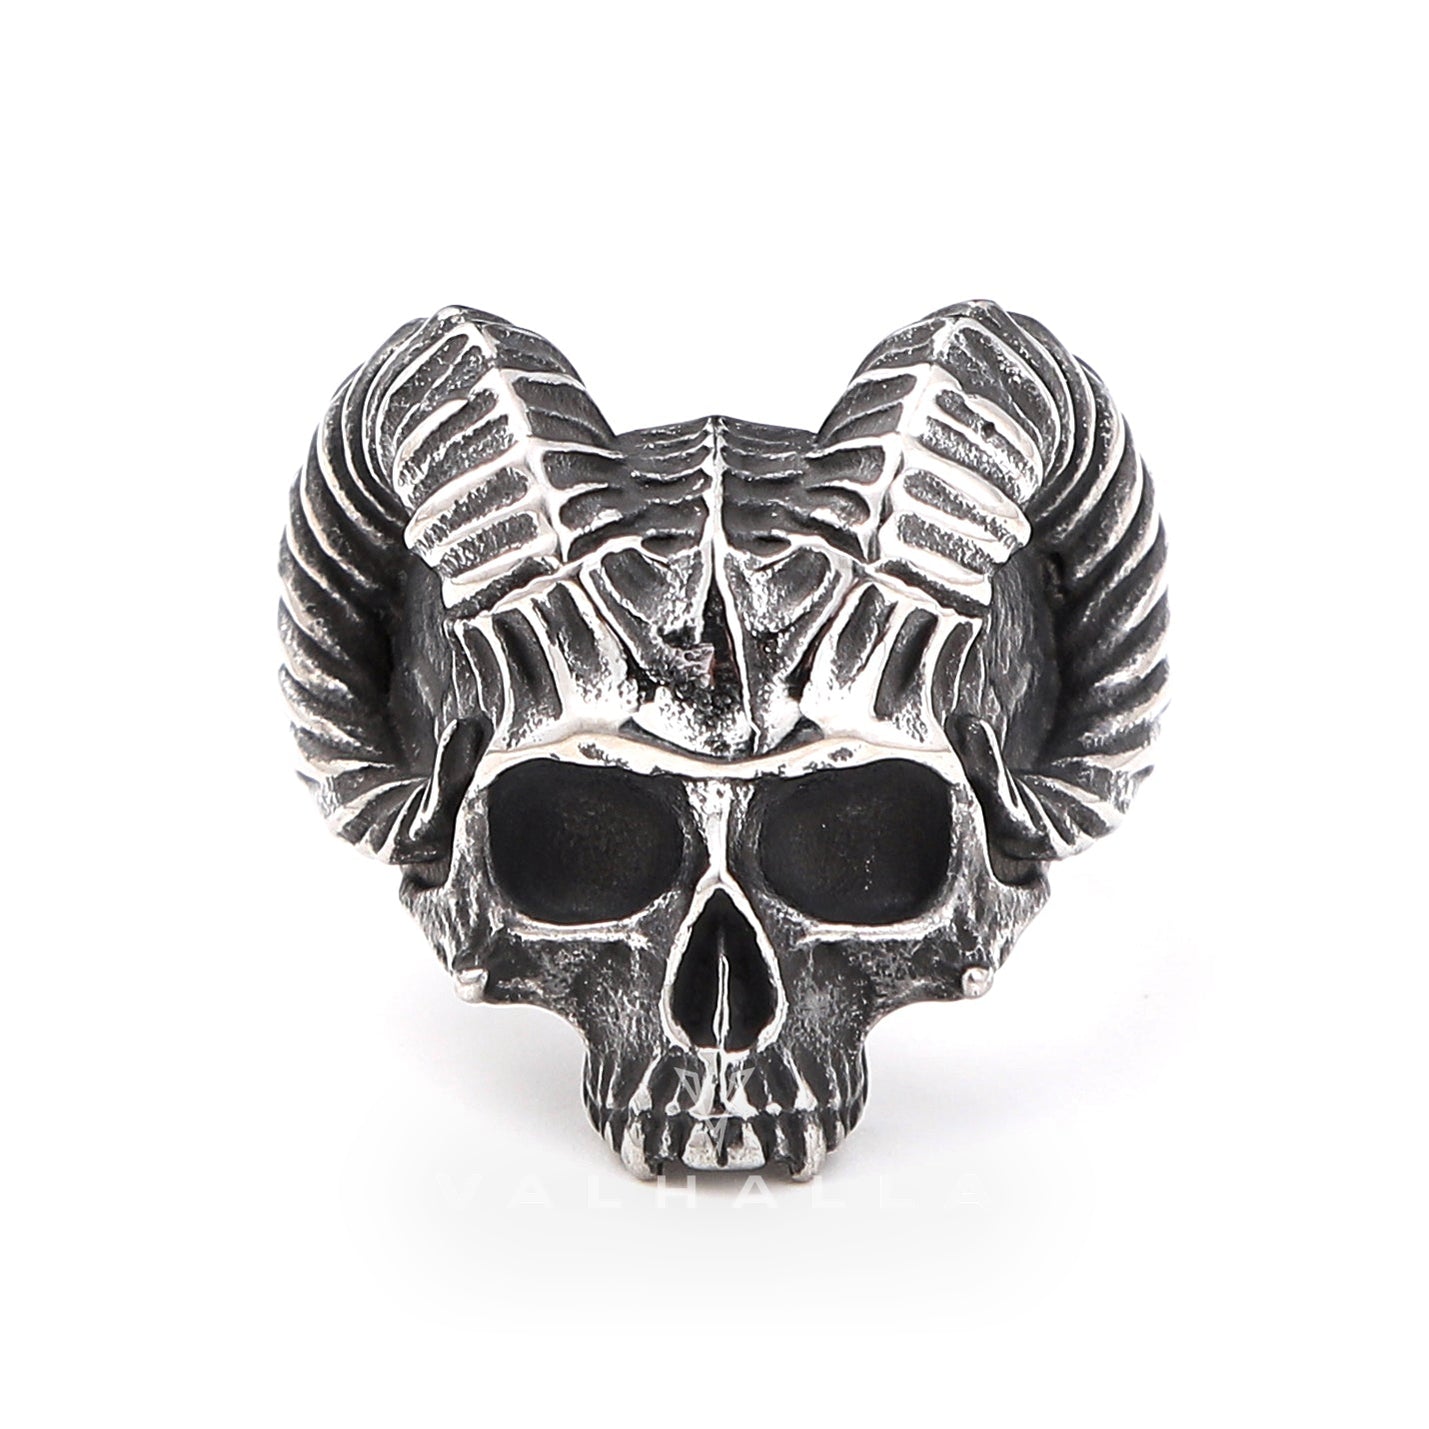 Horn Stainless Steel Skull Ring